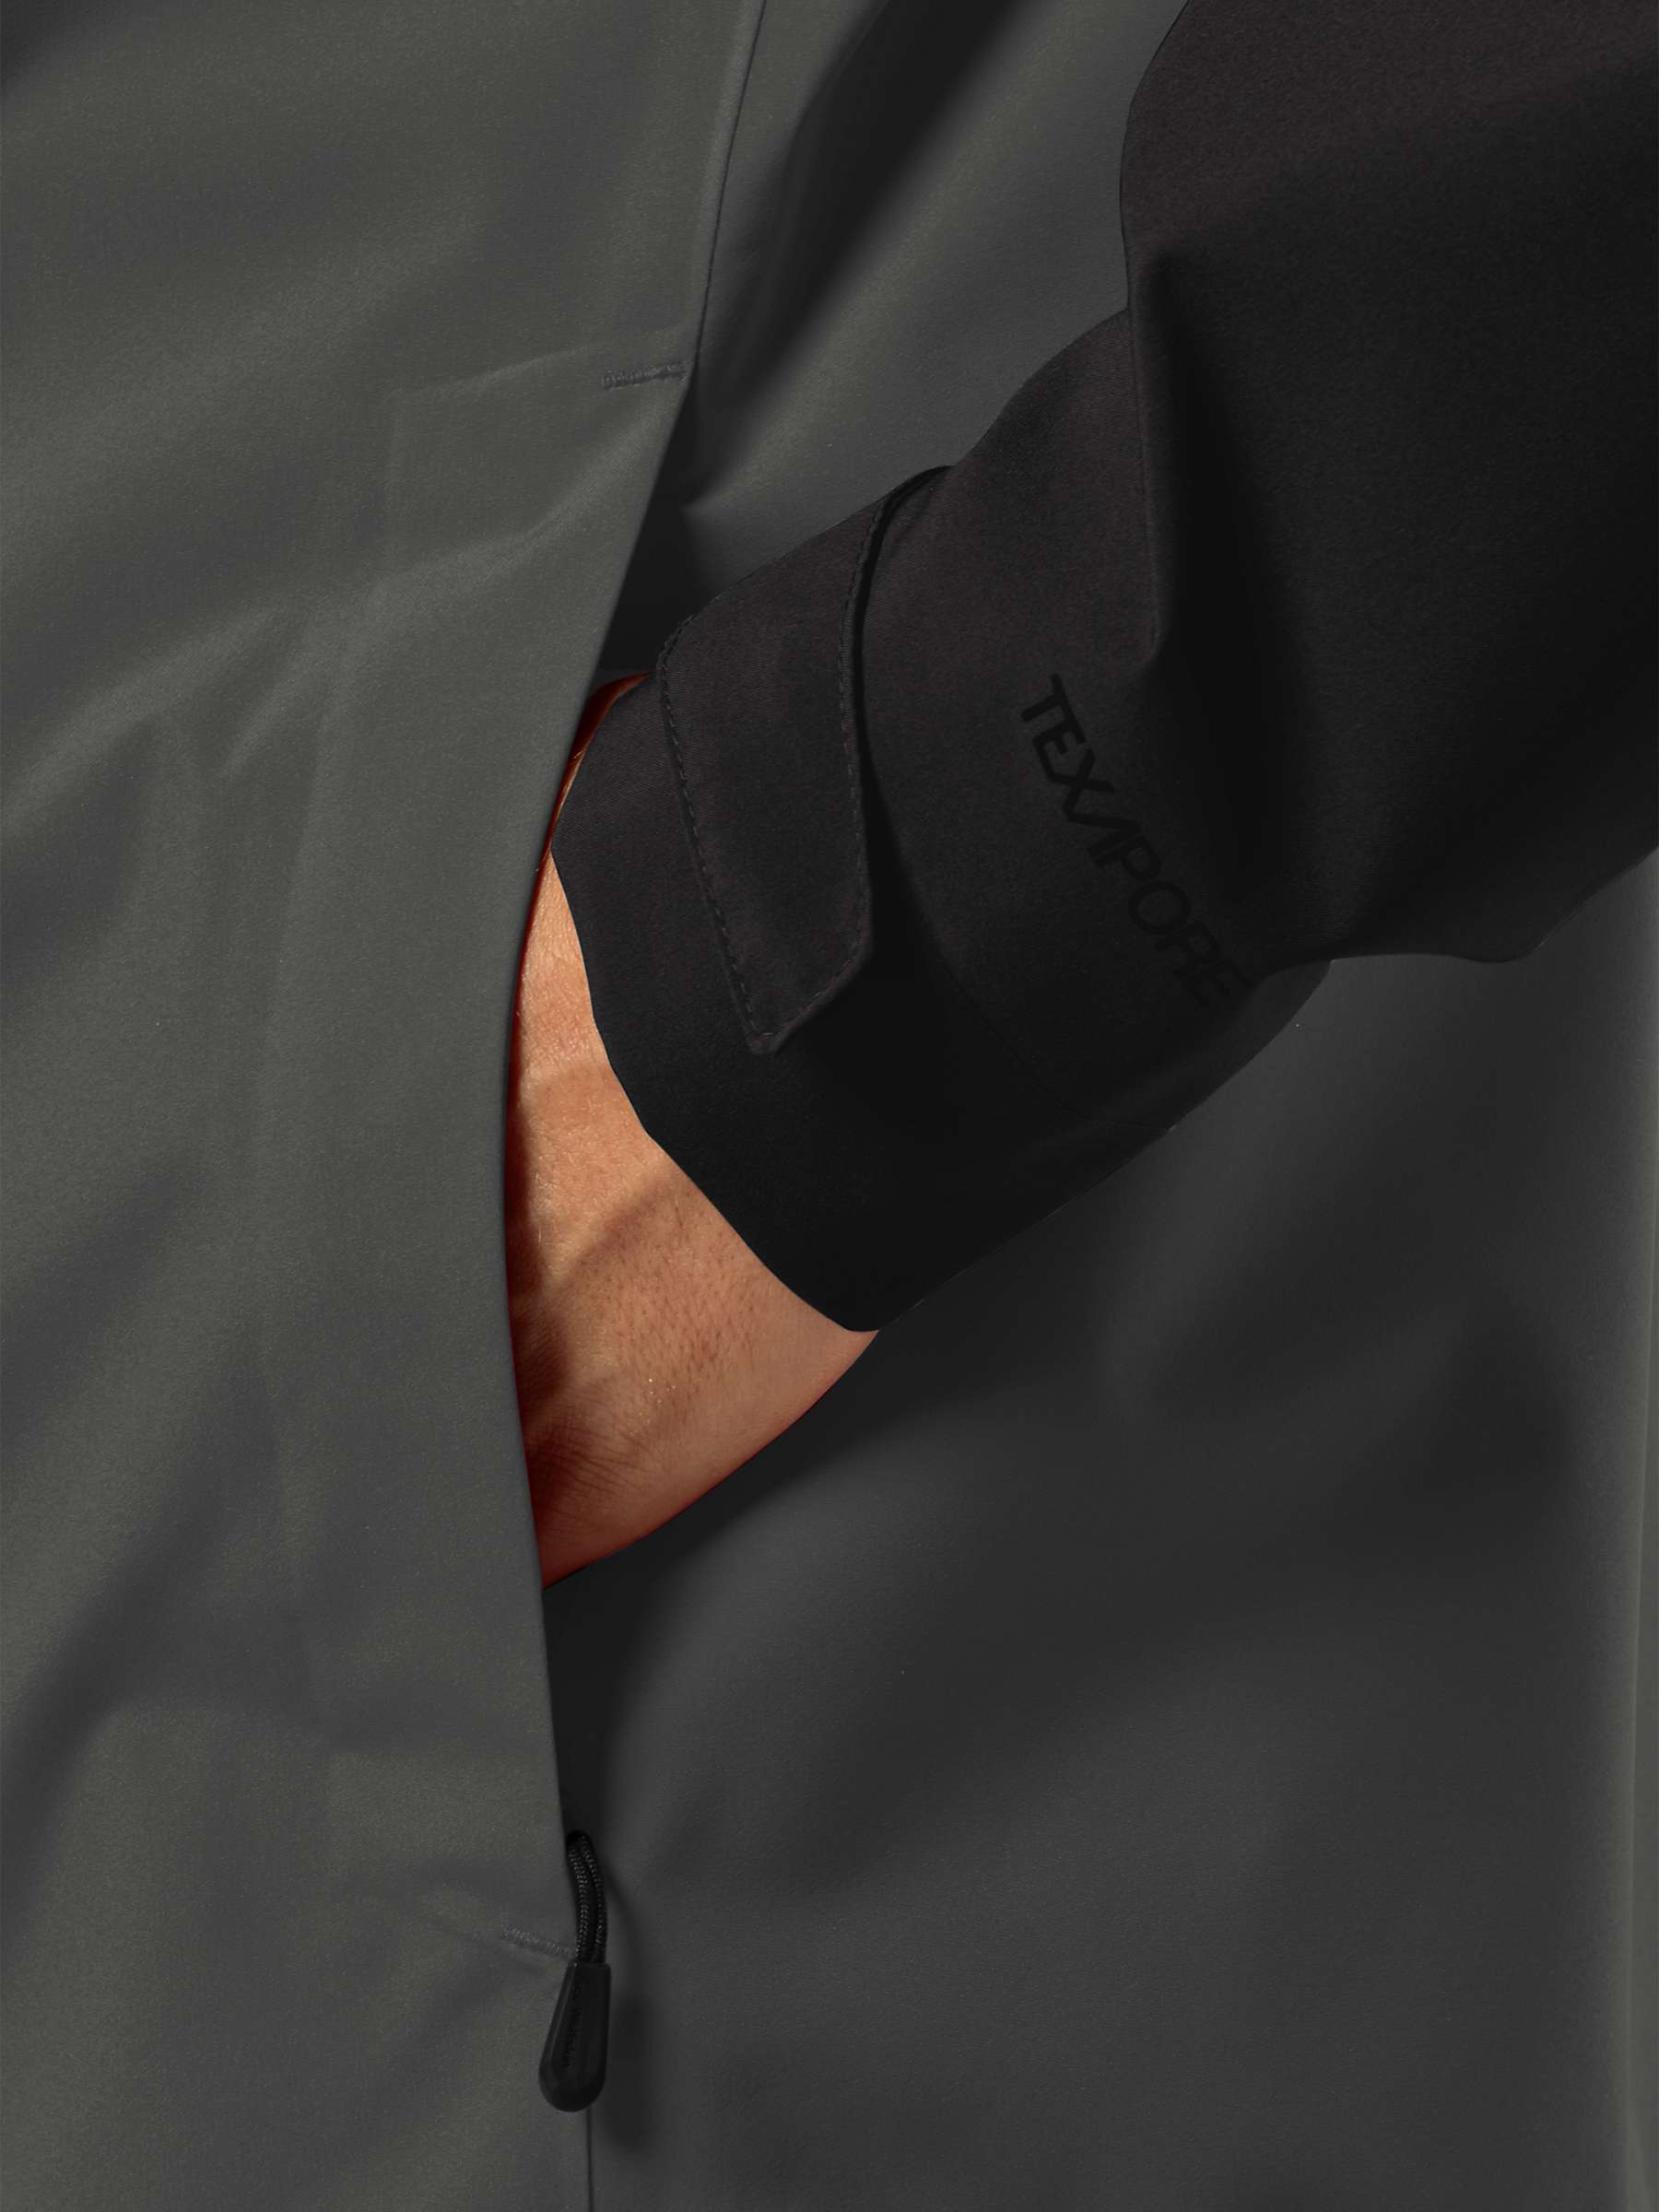 Buy Jack Wolfskin Weiltal 2 Layer Jacket, Grey/Black Online at johnlewis.com